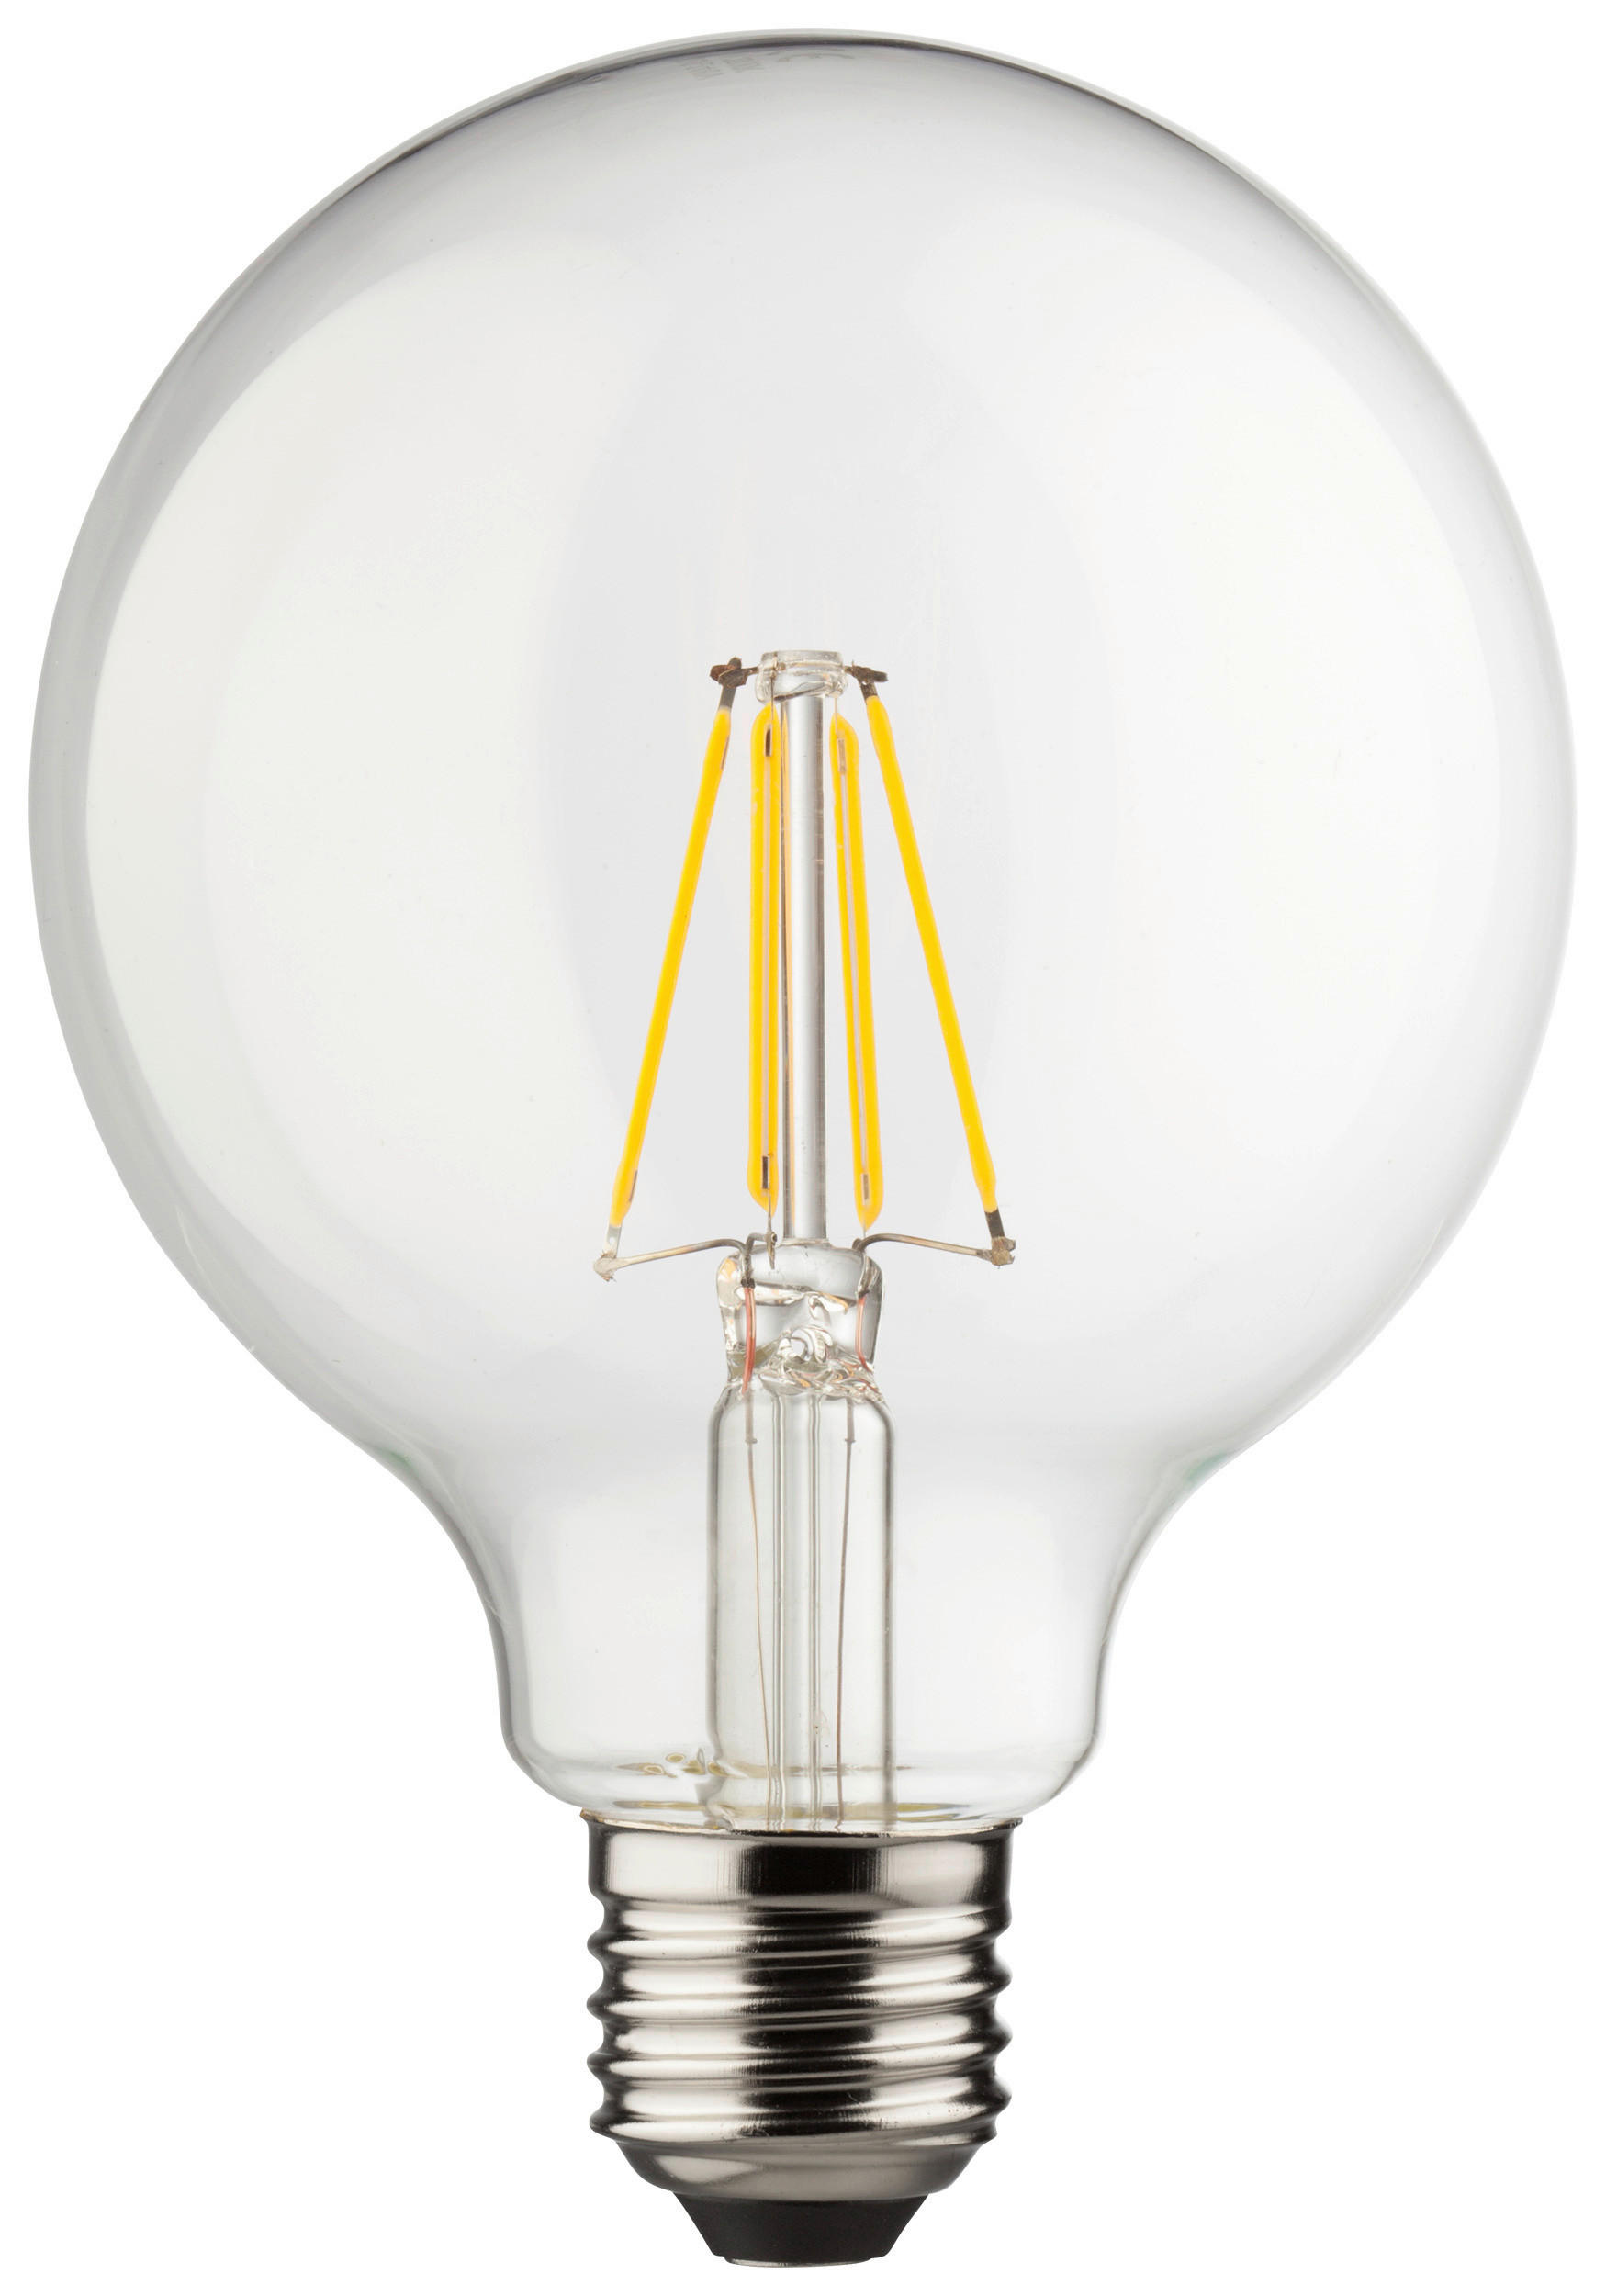 POCOline Globelampe 33419 E27 Globelampe_E27_Pocoline - klar (9,50/14,00cm)